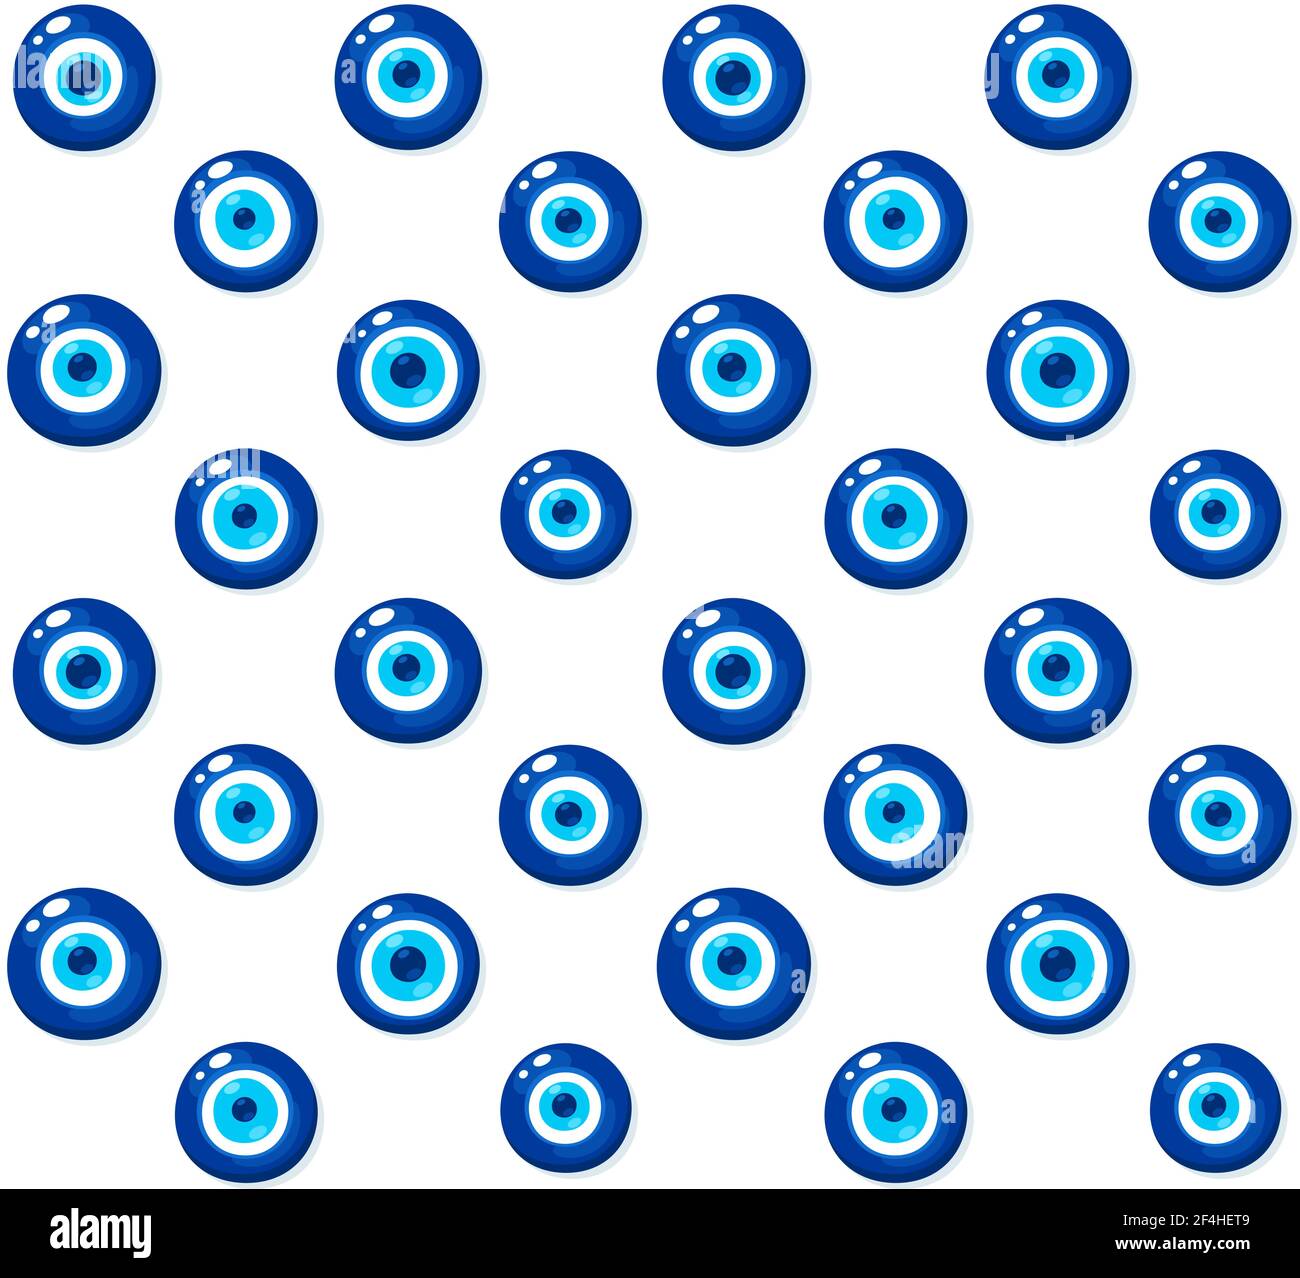 Nazar Boncugu, Türkisches Böses Auge. Blaues, nahtloses Muster mit Glasauge. Vektorgrafik Hintergrund Textur Illustration. Stock Vektor